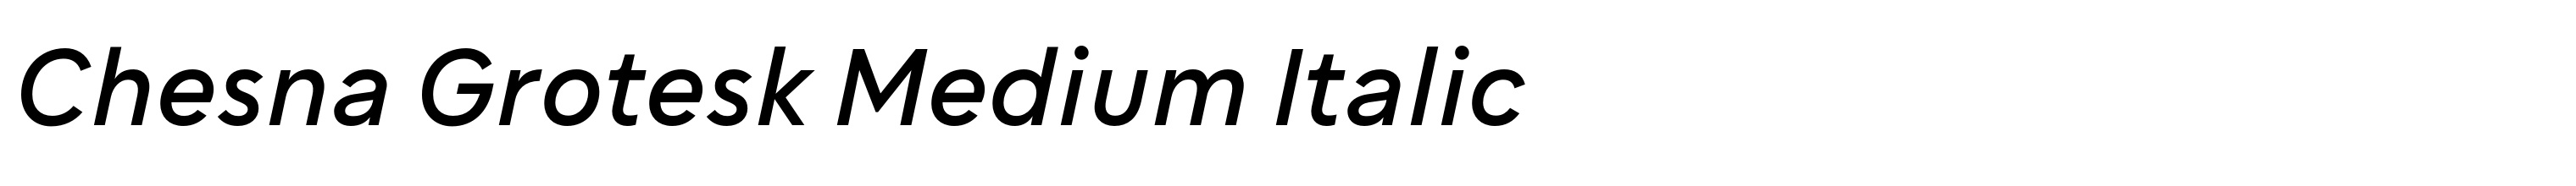 Chesna Grotesk Medium Italic